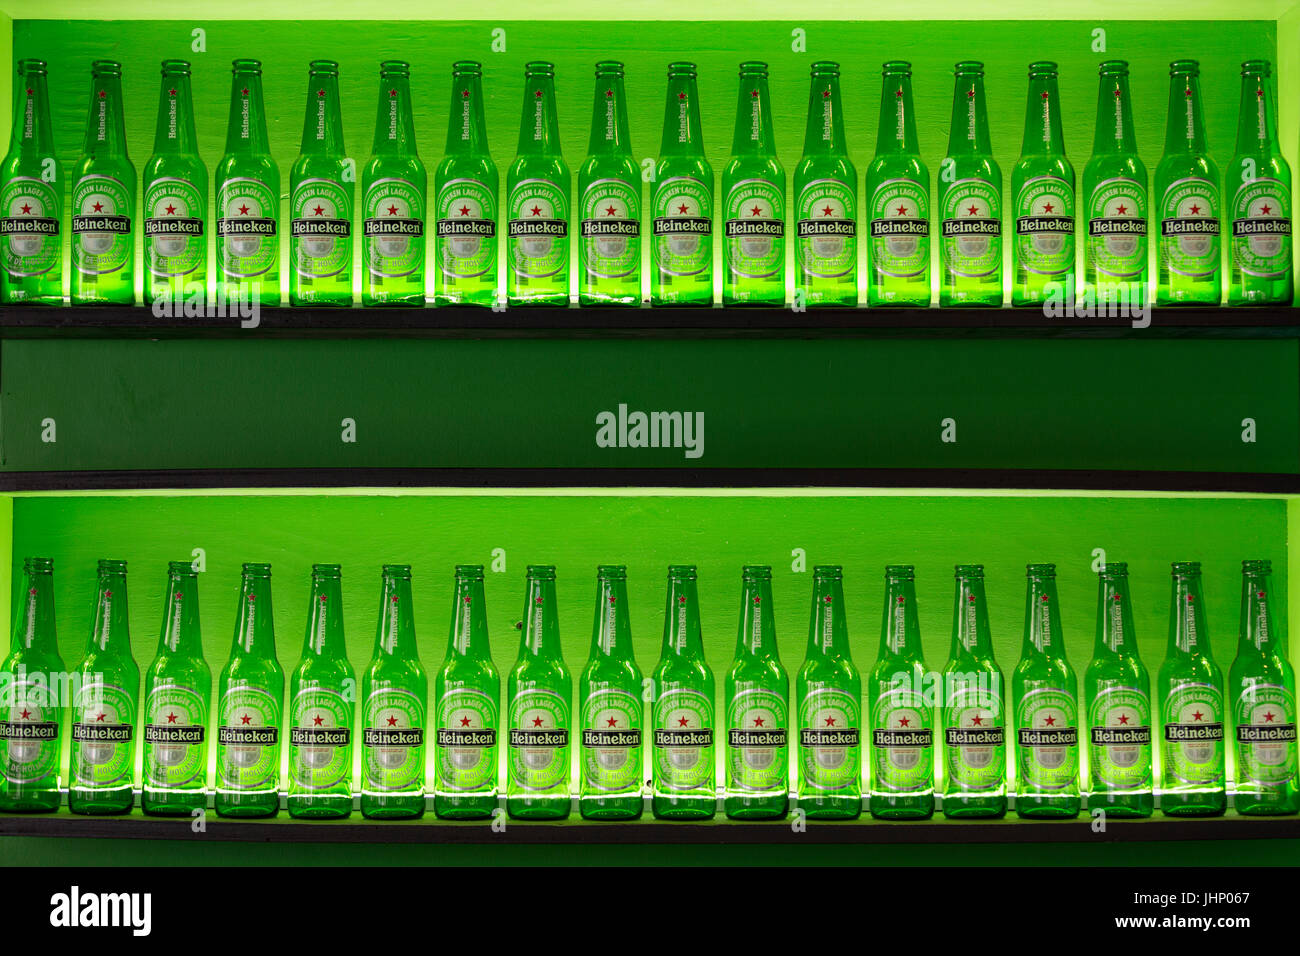 Heinekin beer bottles lines up on display Stock Photo